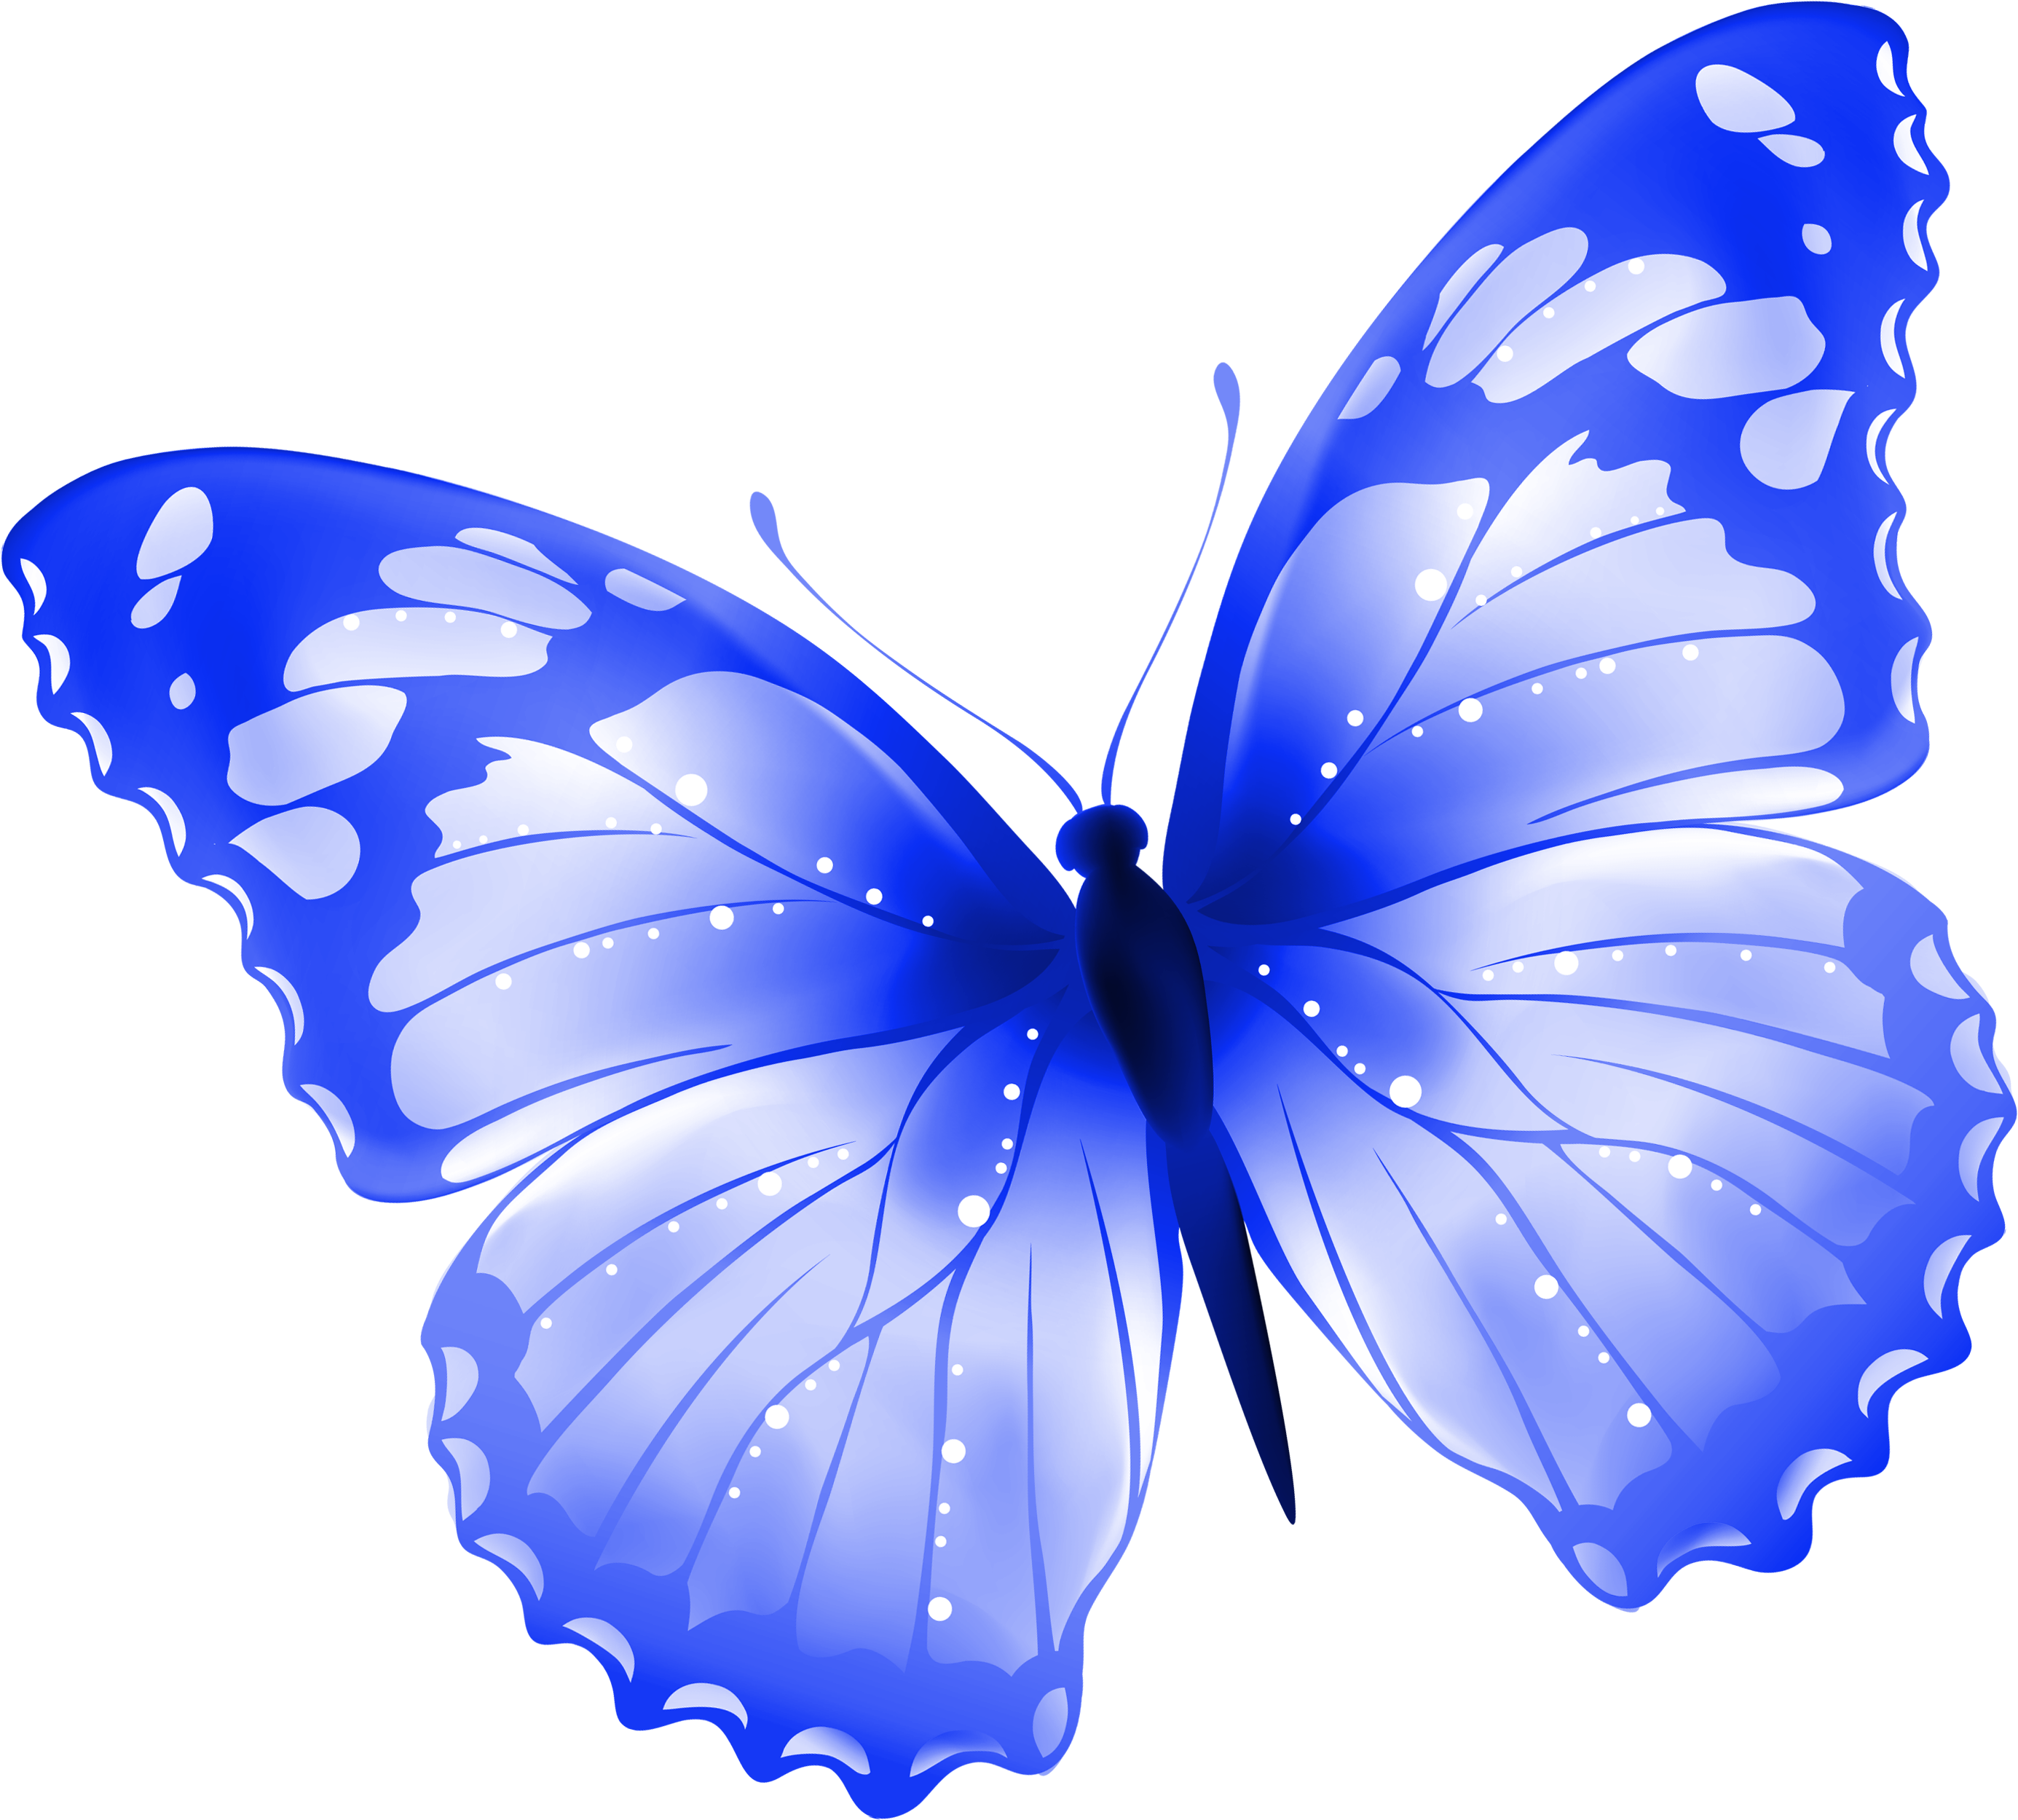 Картинки на прозрачном фоне. Бабочки на белом фоне. Картинка бабочка на прозрачном фоне. Бабочки на просроченном фоне. Синие бабочки на прозрачном фоне.